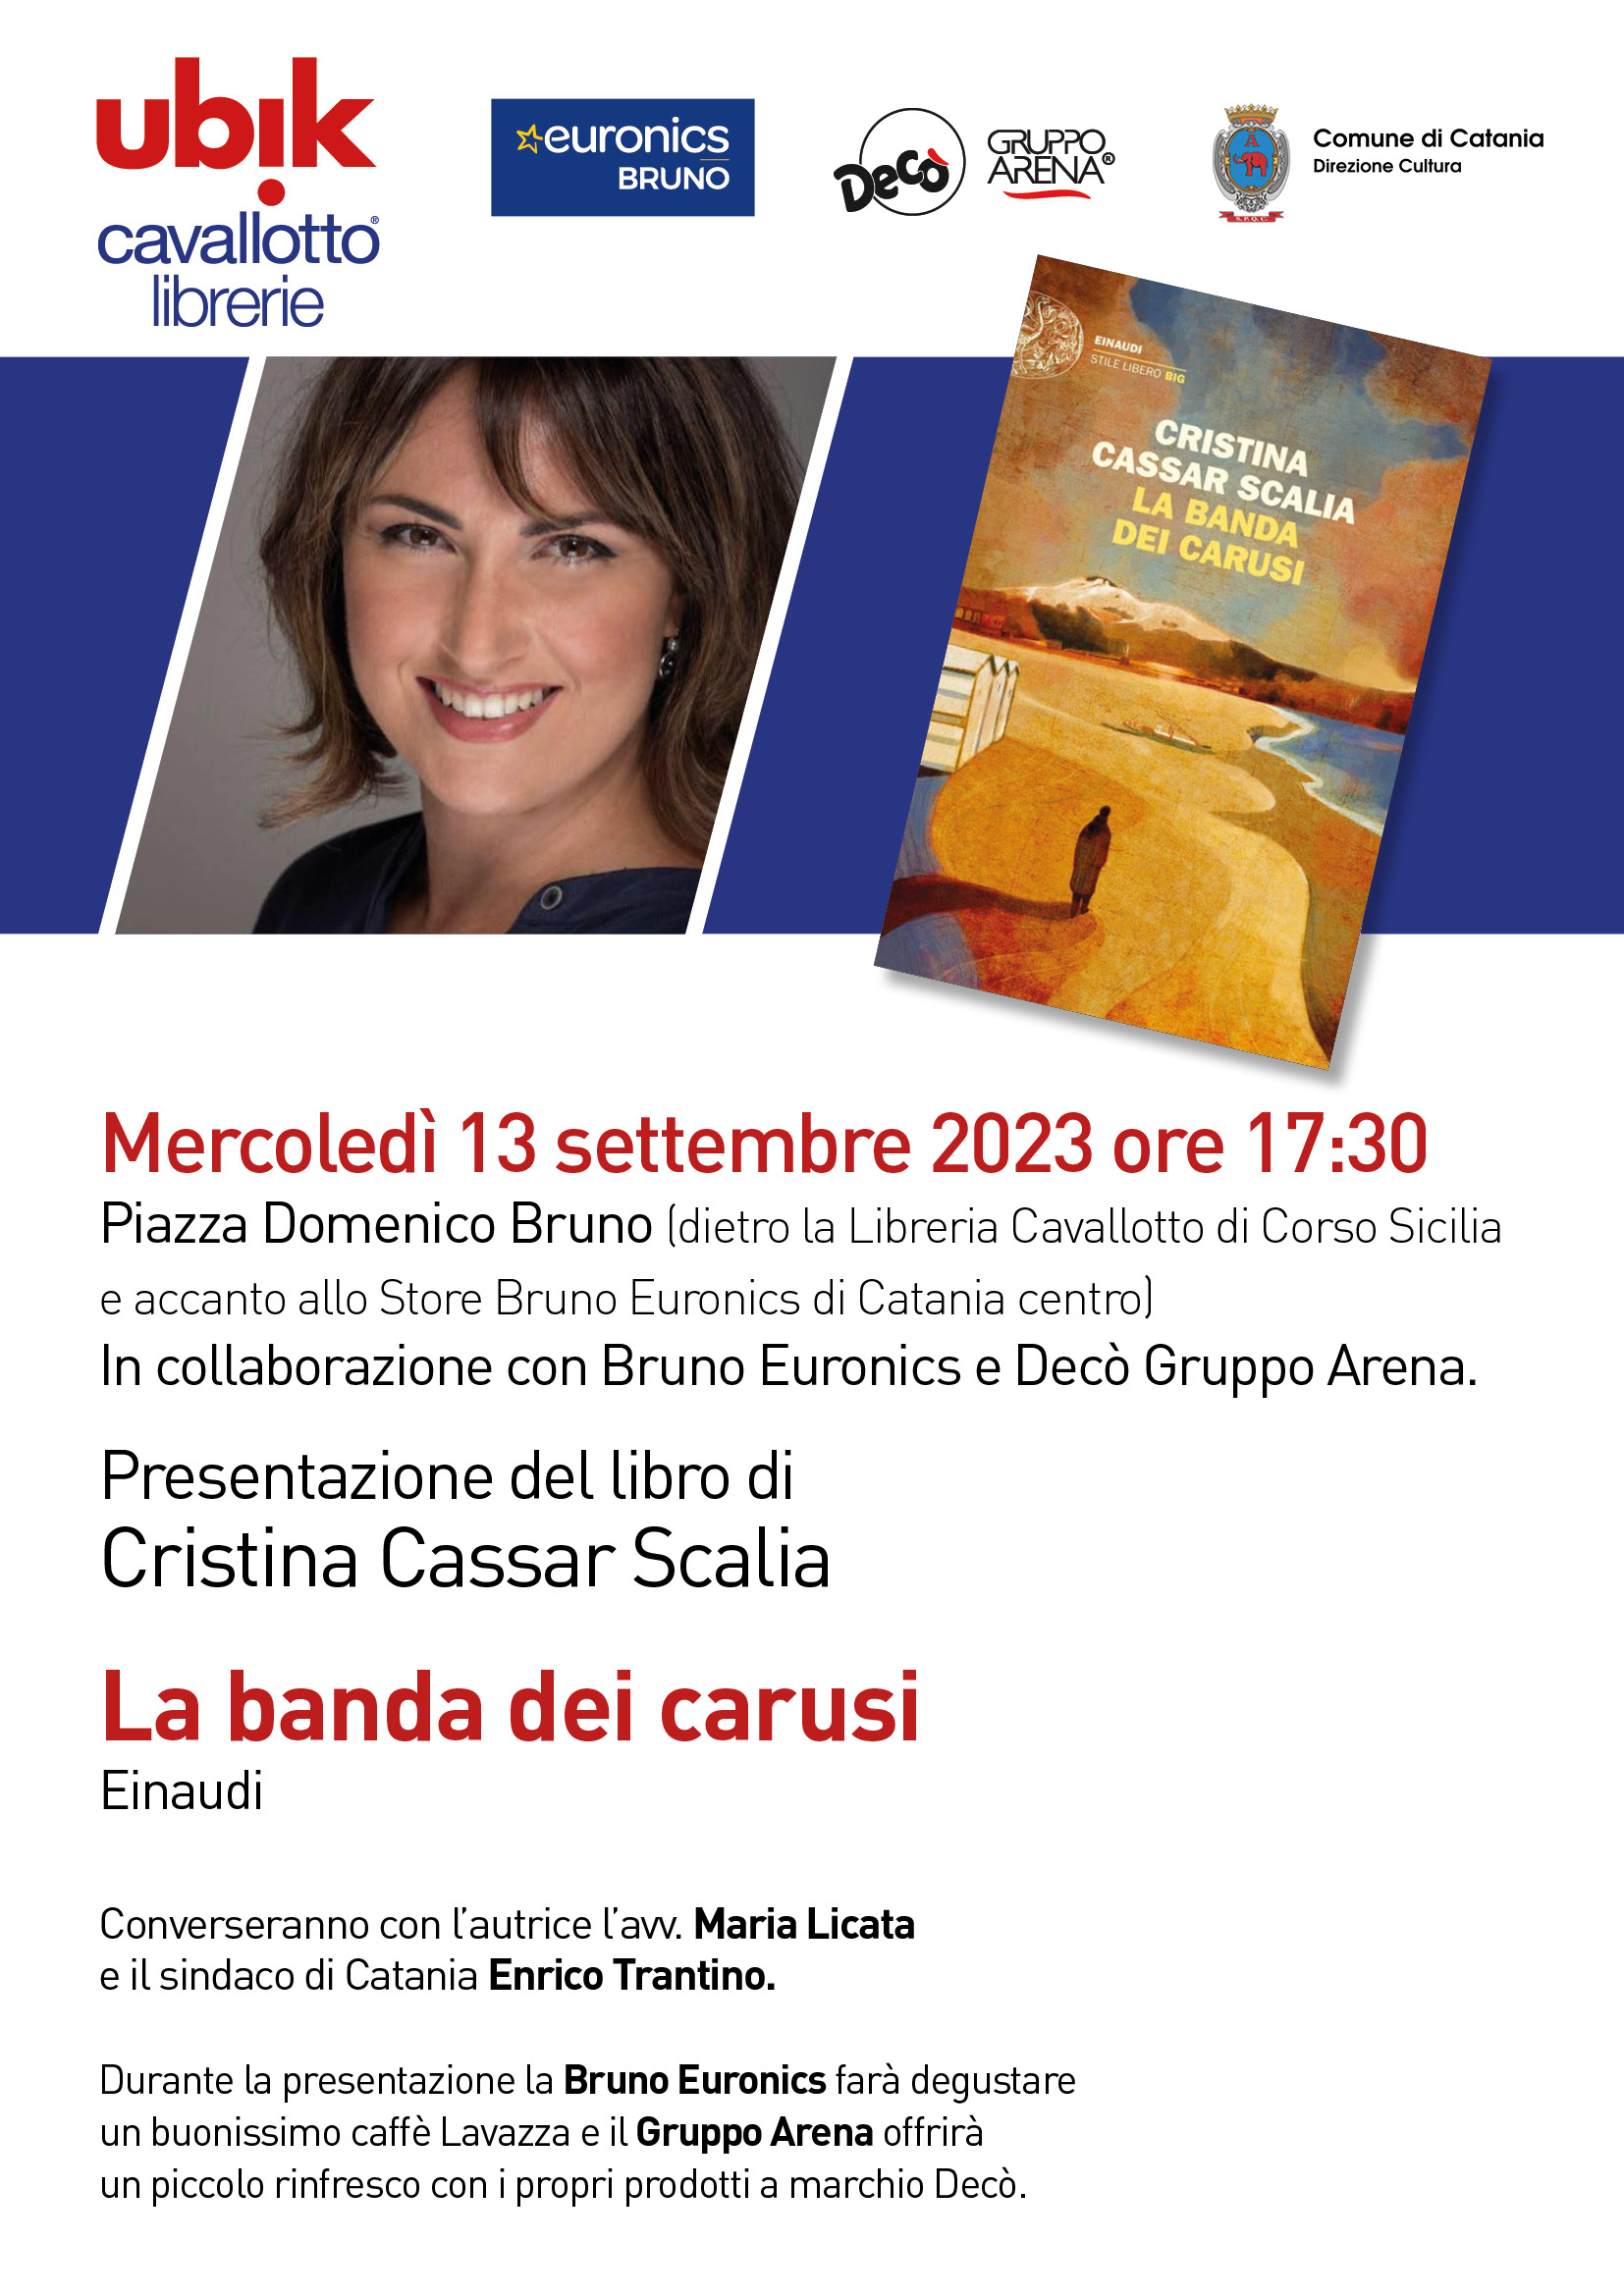 Presentazione del libro di Cristina Cassar Scalia La banda dei carusi,  Einaudi.